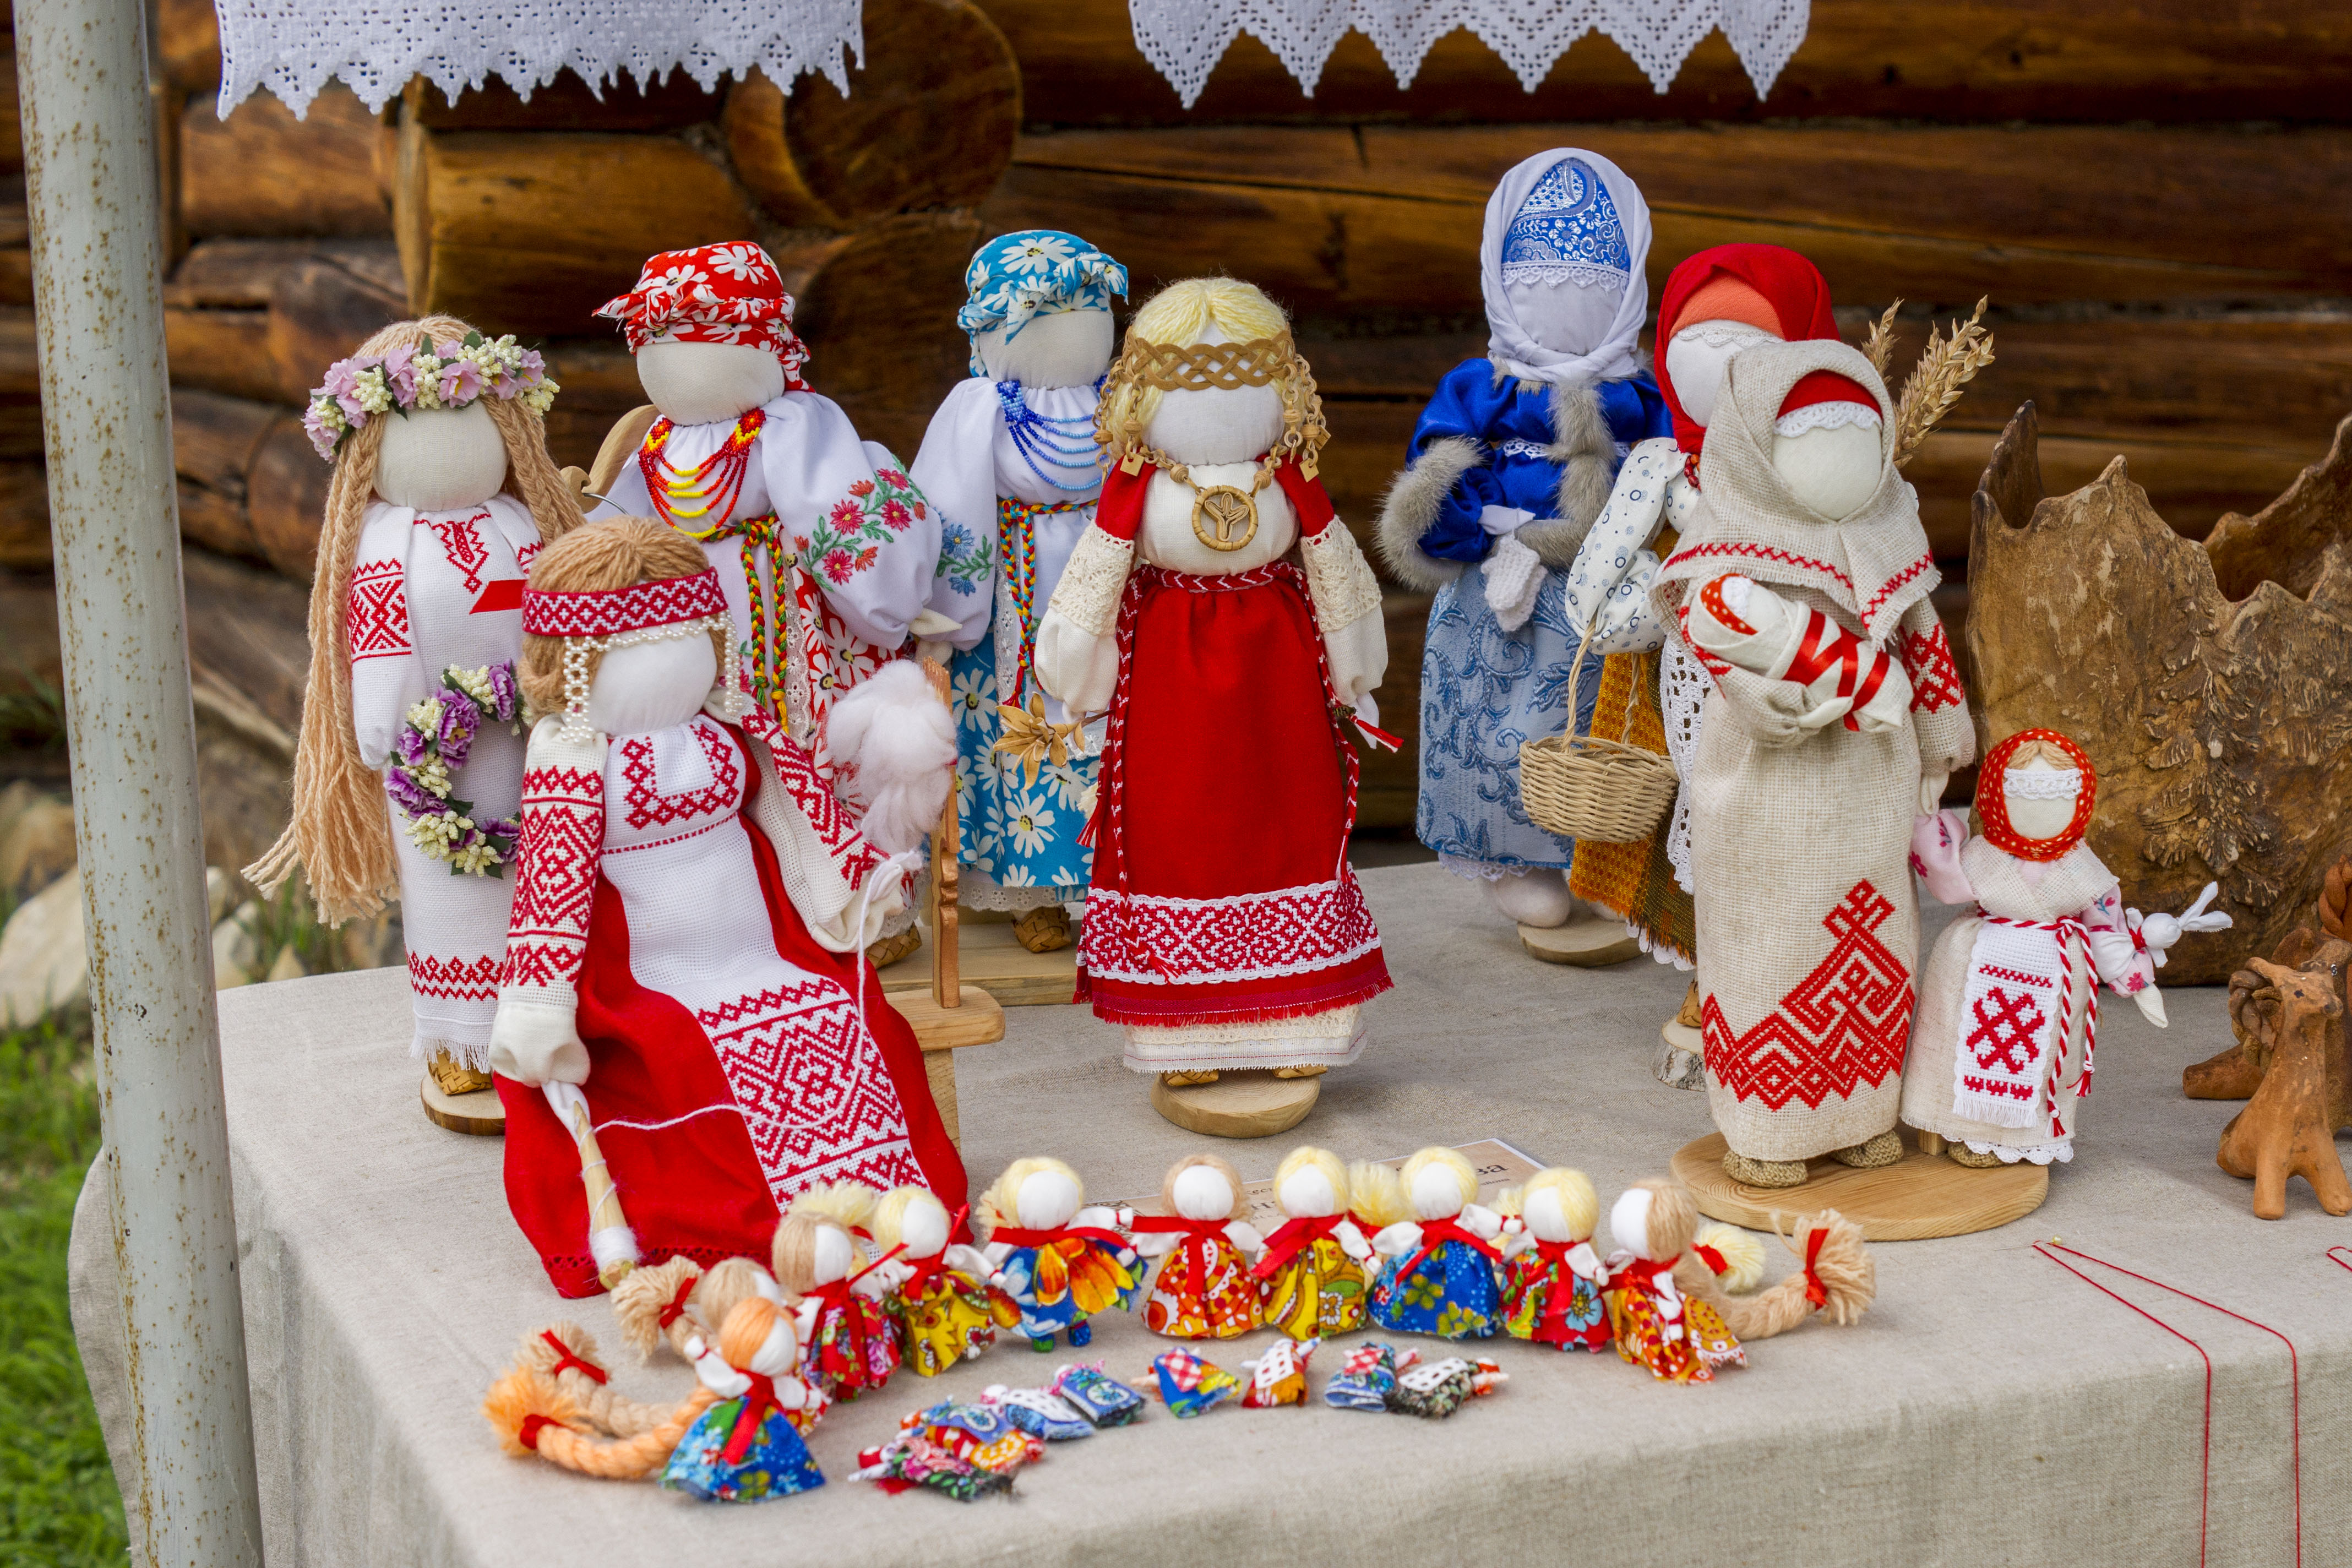 Какой город славится своими традиционными национальными праздниками. Народные промыслы Иркутской области. Традиции народных промыслов. Традиционная народная кукла. Народное ремесло Иркутской области.